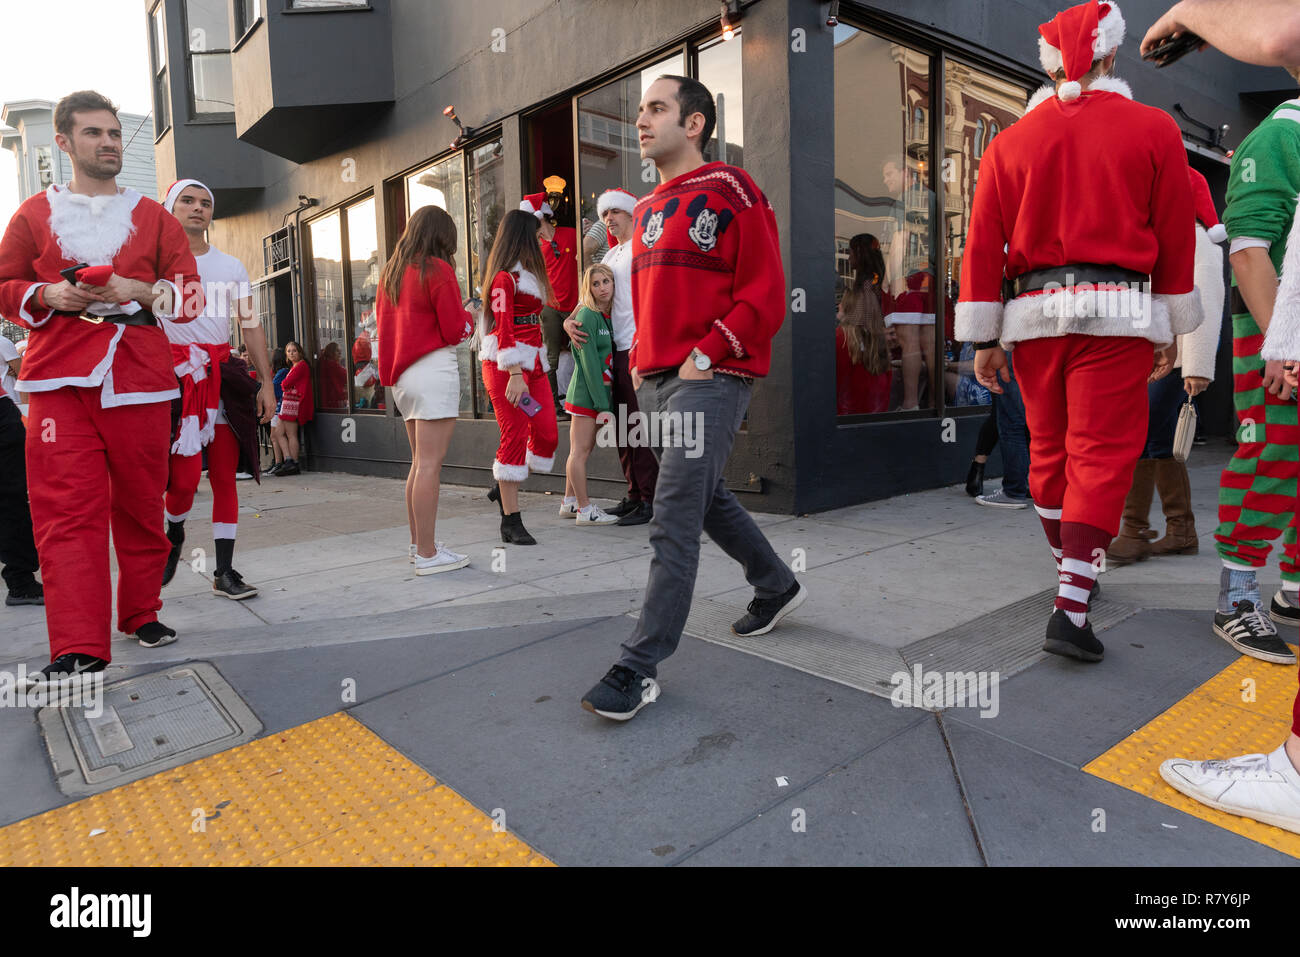 Holiday revelers in San Francisco vestito di Babbo Natale/Natale costumi per l annuale SantaCon pub crawl. Foto Stock